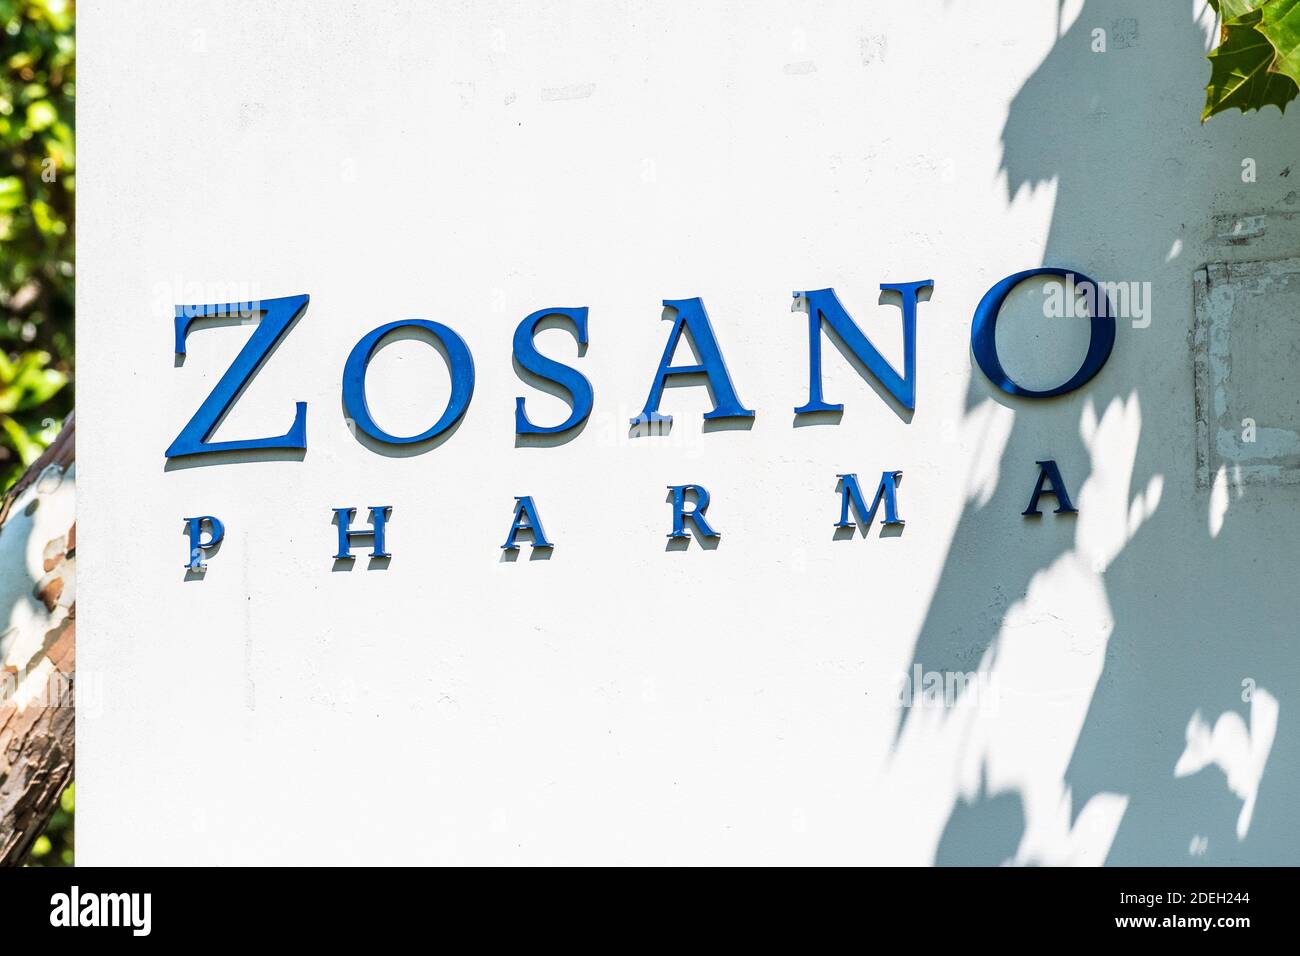 17 settembre 2020 Fremont / CA / USA - Zosano Pharma logo presso la loro sede centrale in Silicon Valley; Zosano Pharma Corporation fornisce un professionista biofarmaceutico Foto Stock